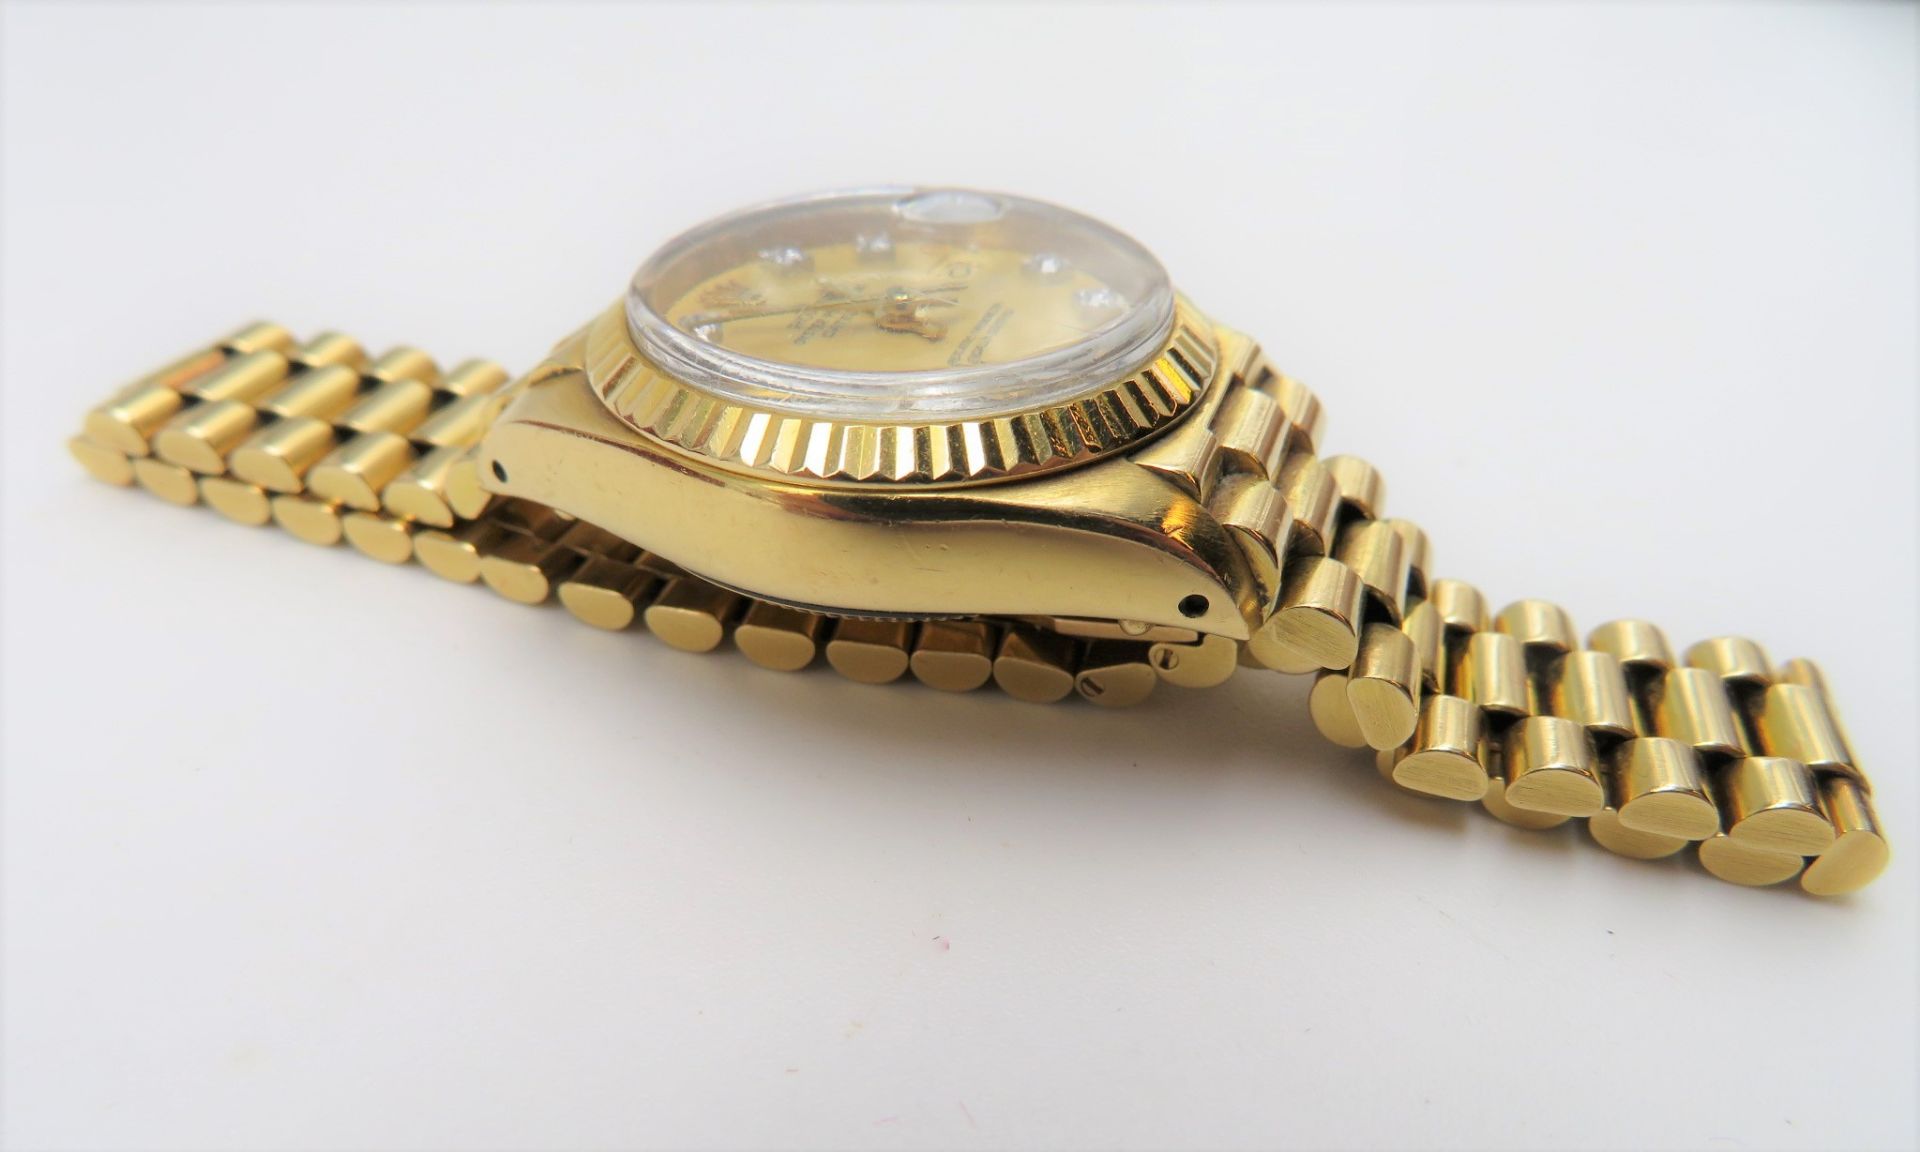 DAU, Rolex Datejust, BJ 30.03.1983, President-Armband mit verdeckter Goldschließe,  intakt, Zifferb - Bild 3 aus 7